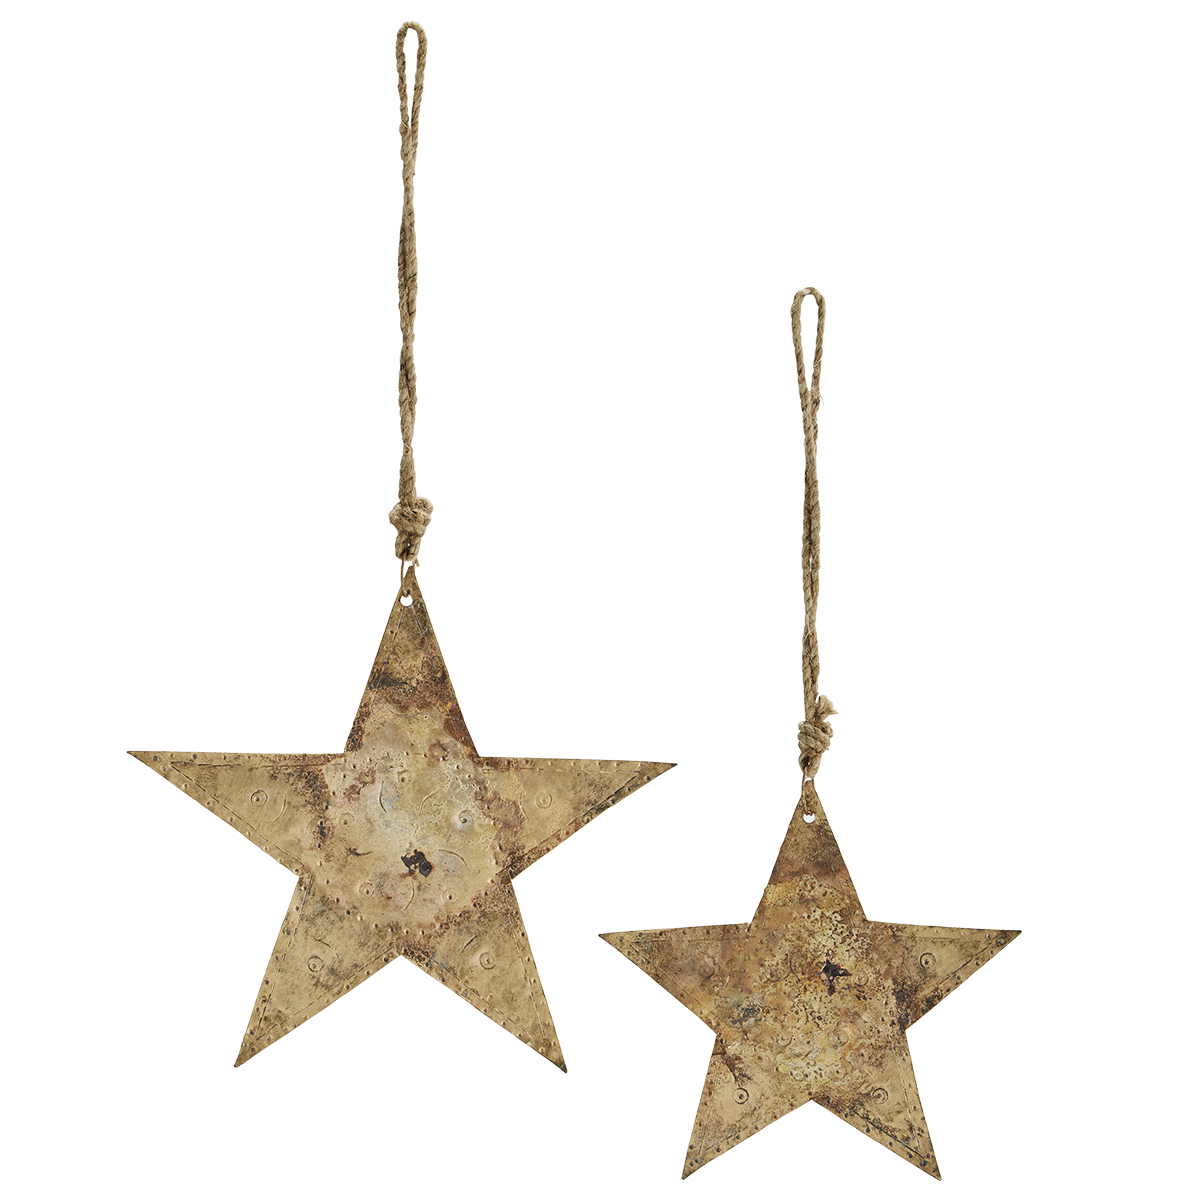 Hanging iron stars